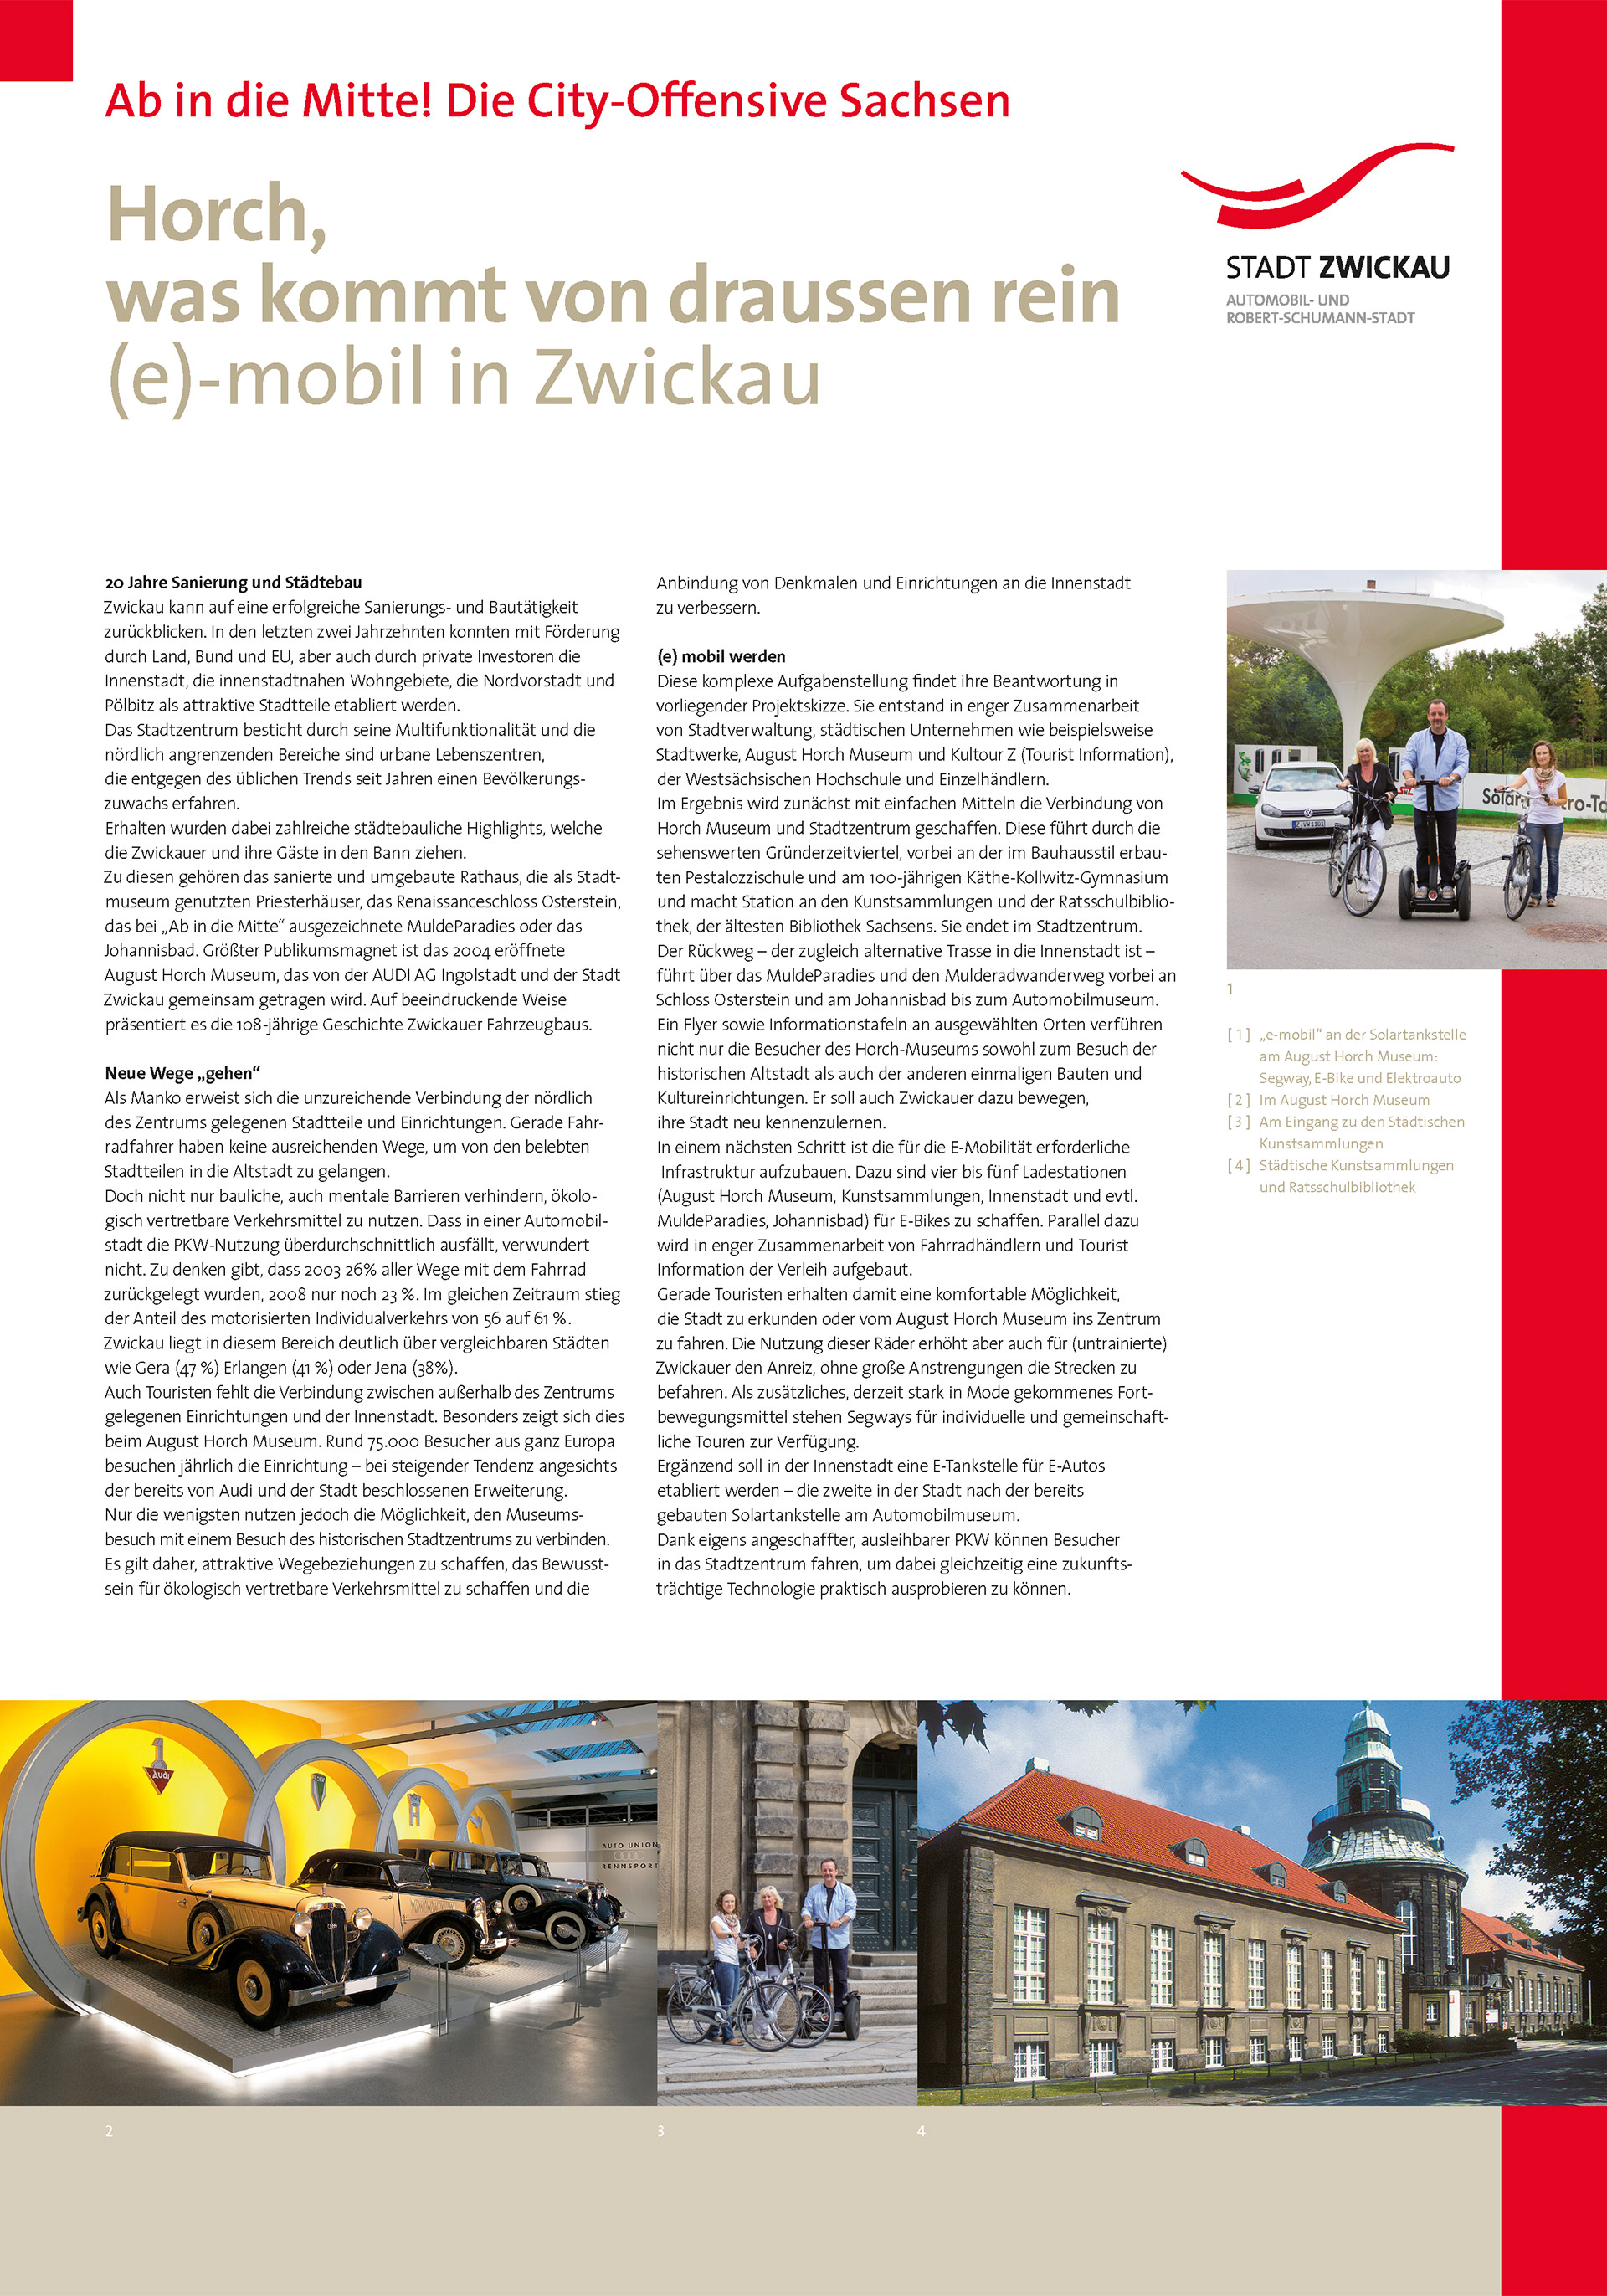 Horch, was kommt von draußen rein - (e-)mobil in Zwickau